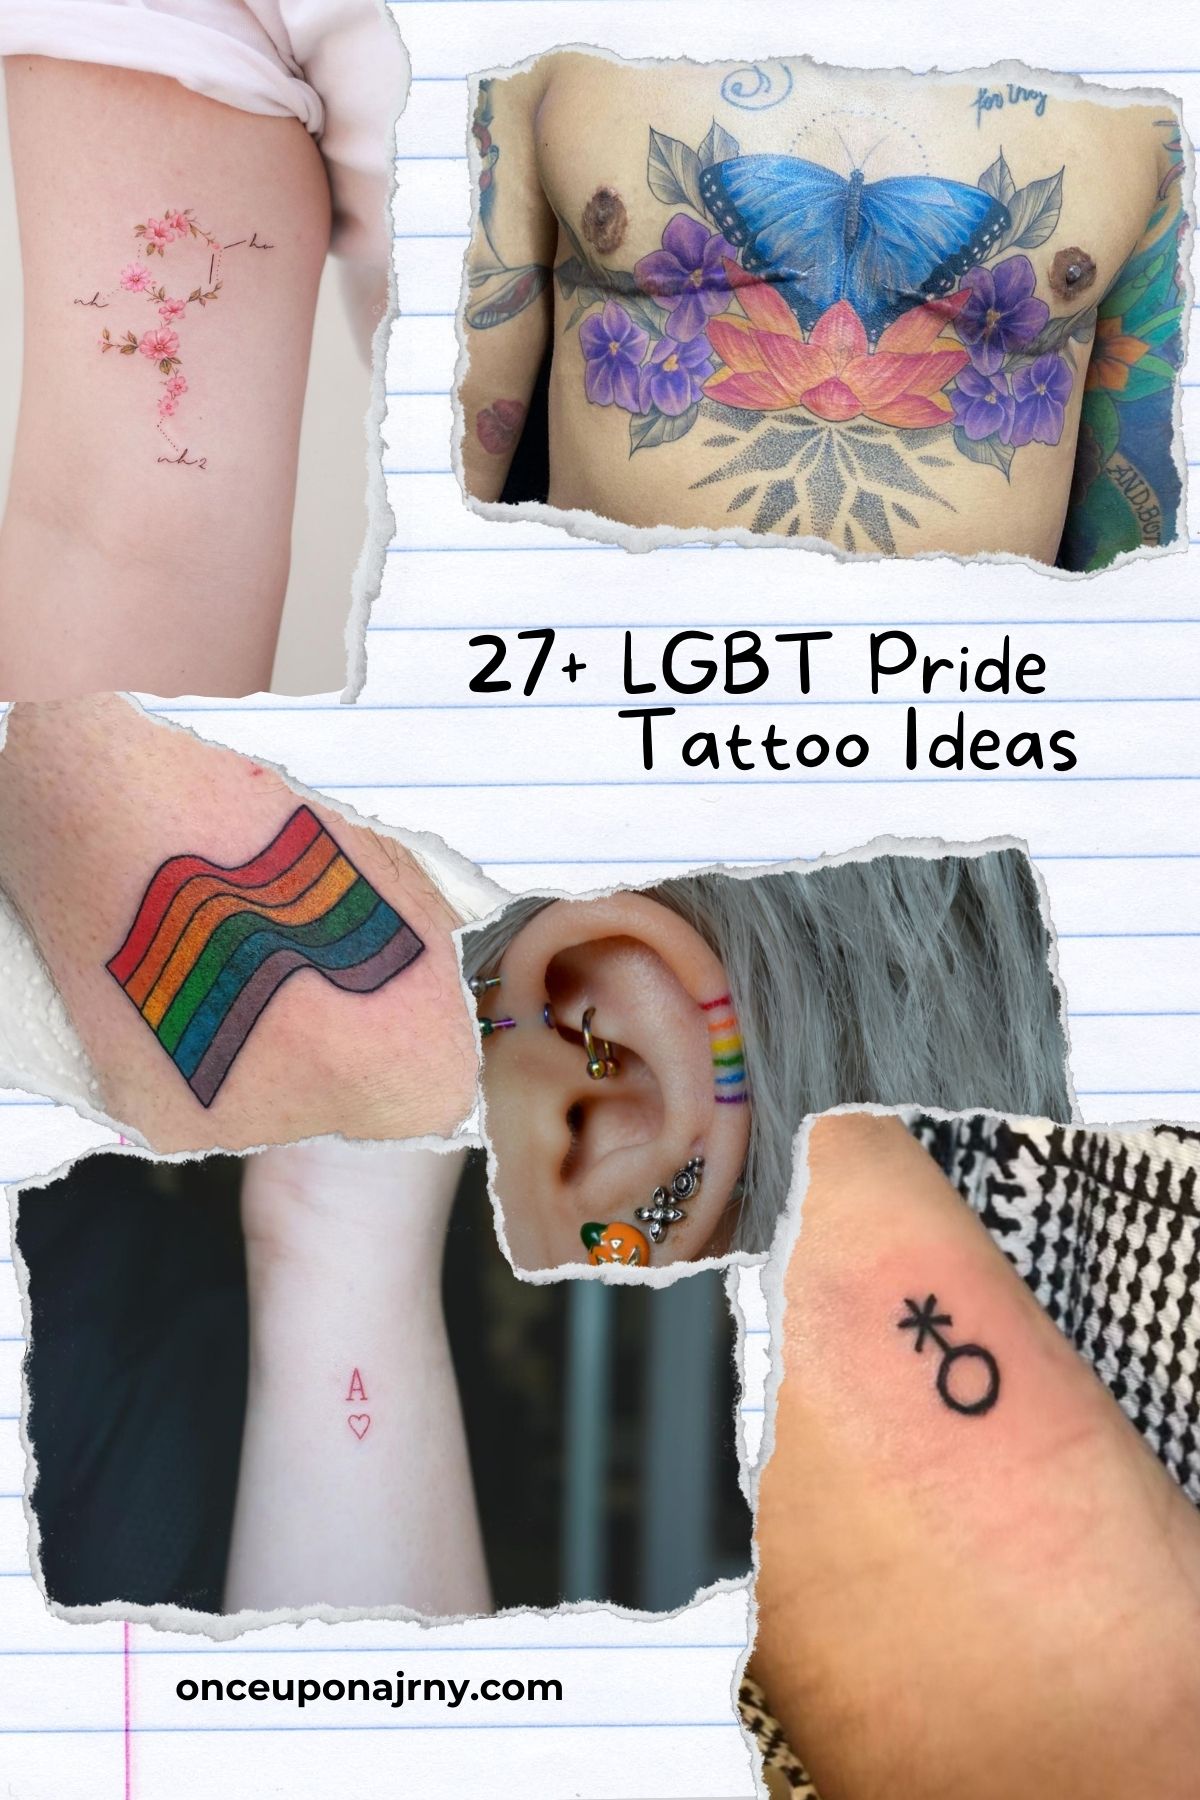 27+ LGBT Pride Tattoo Ideas